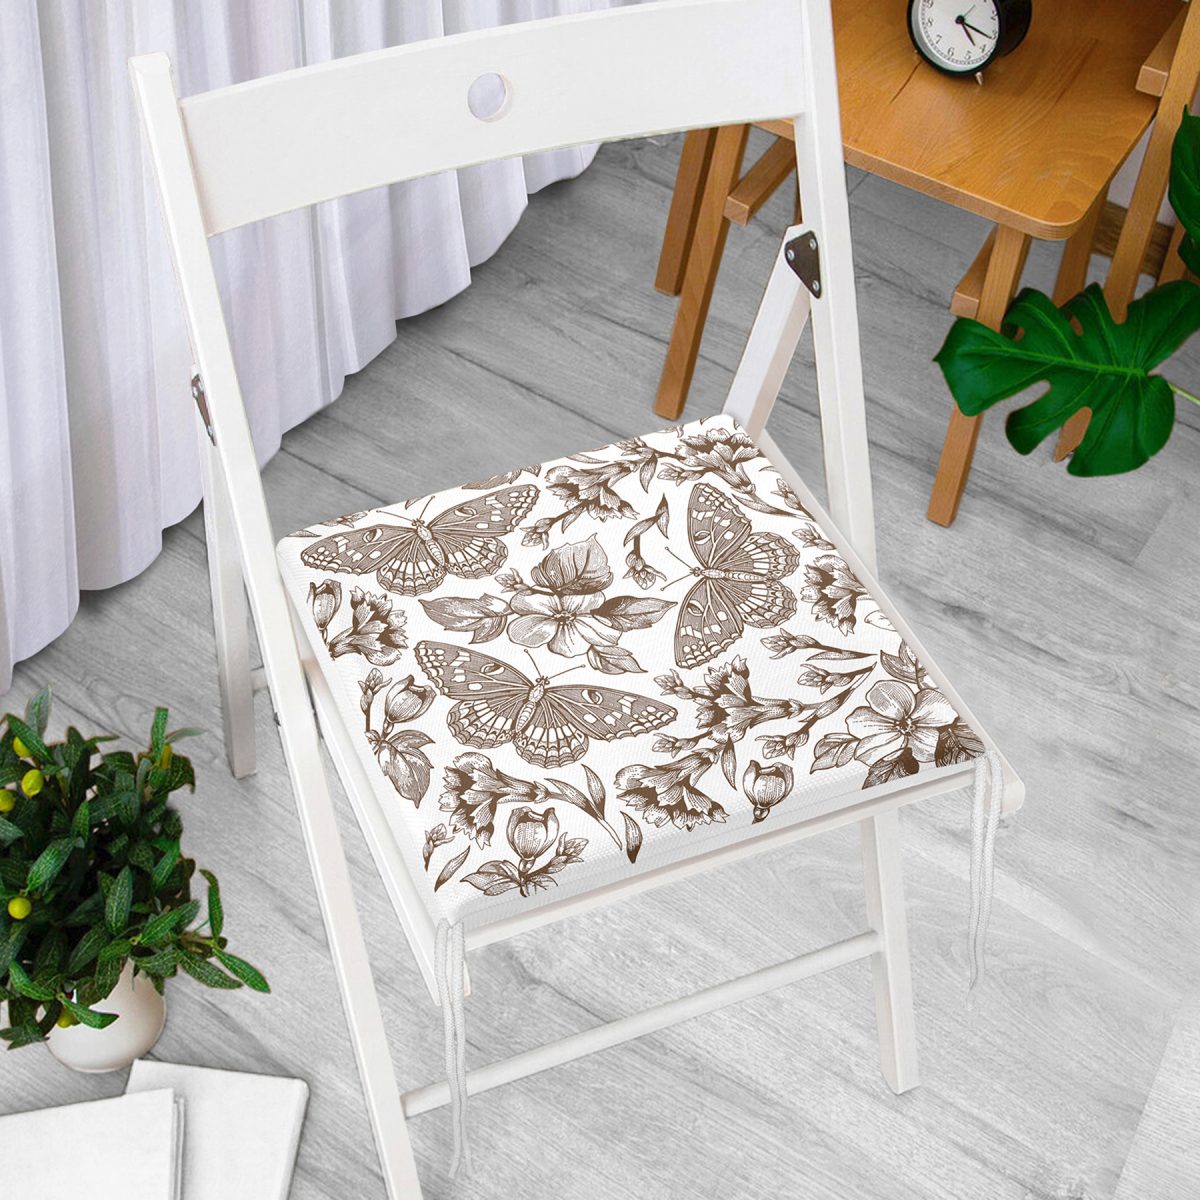 Karakalem Çiçek & Kelebek Desenli Dijital Baskılı Fermuarlı Sandalye Minderi Realhomes